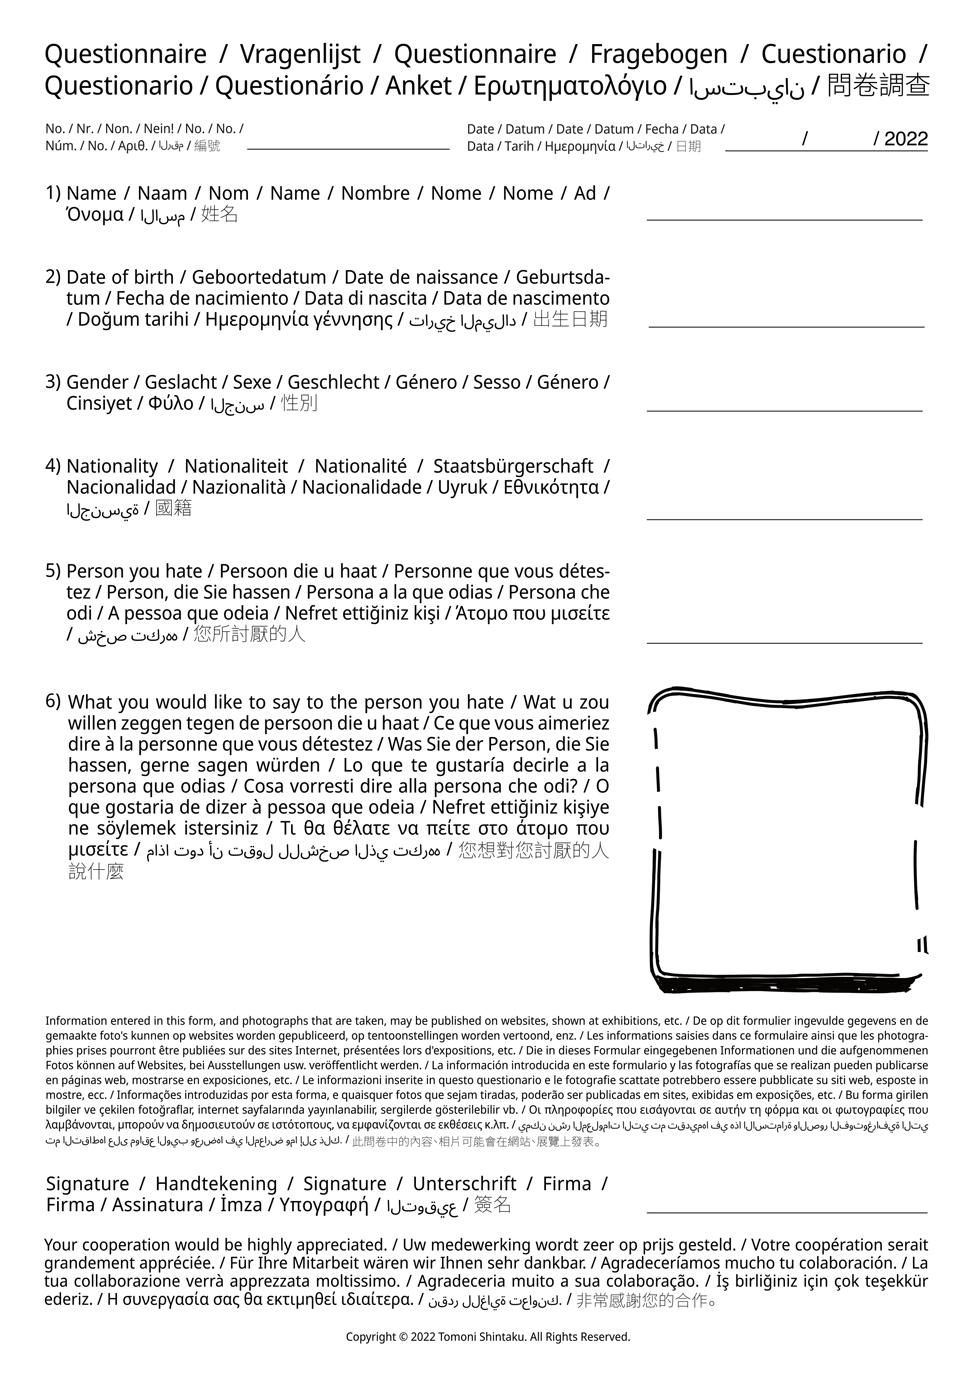 Questionnaire for the participant